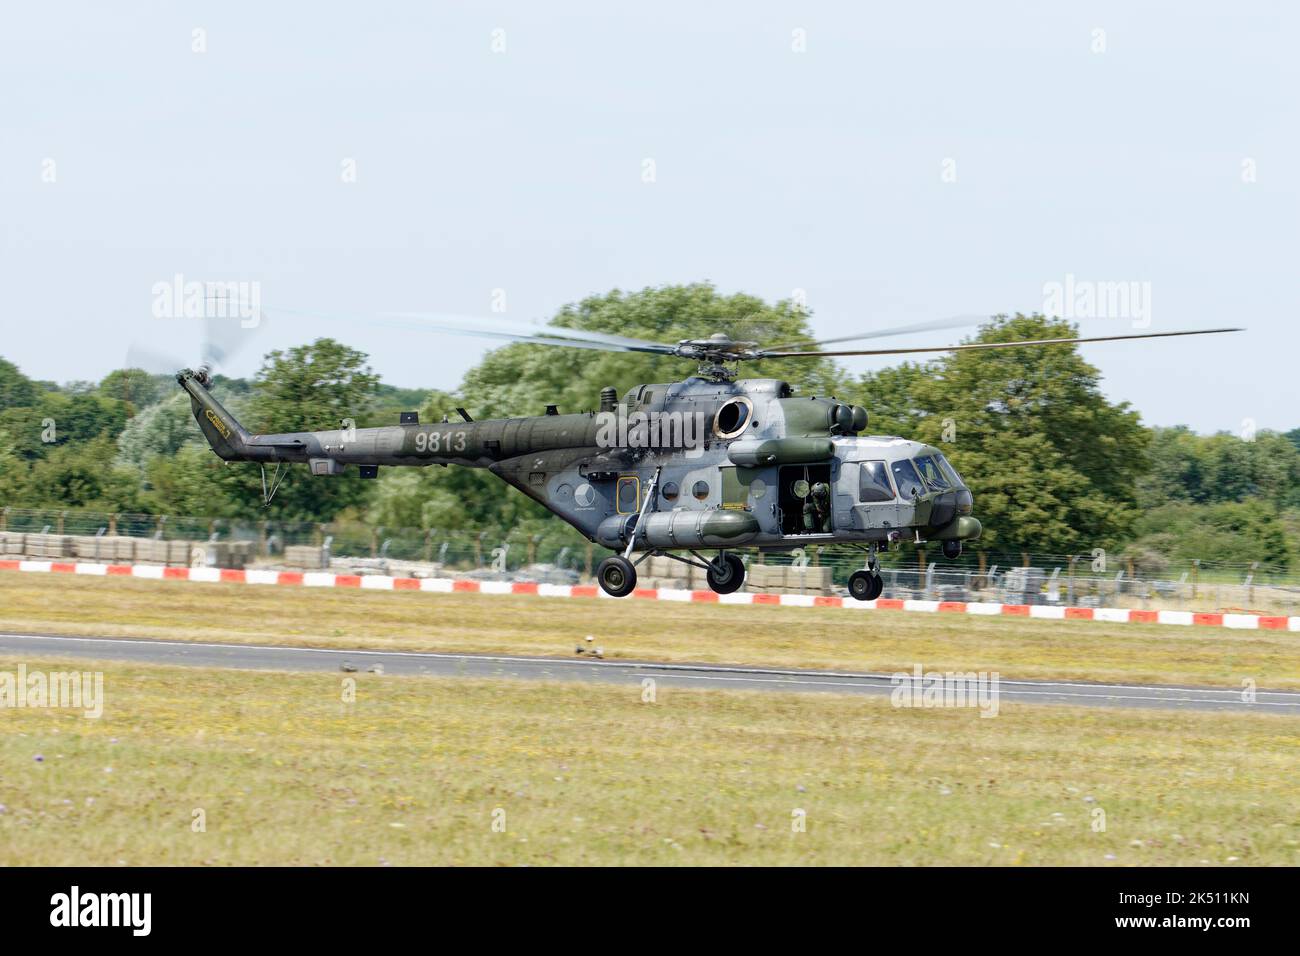 L'hélicoptère militaire de transport MIL MI-171s de l'armée de l'air tchèque présente à RAF Fairford dans le cadre du Royal International Air Tattoo Banque D'Images